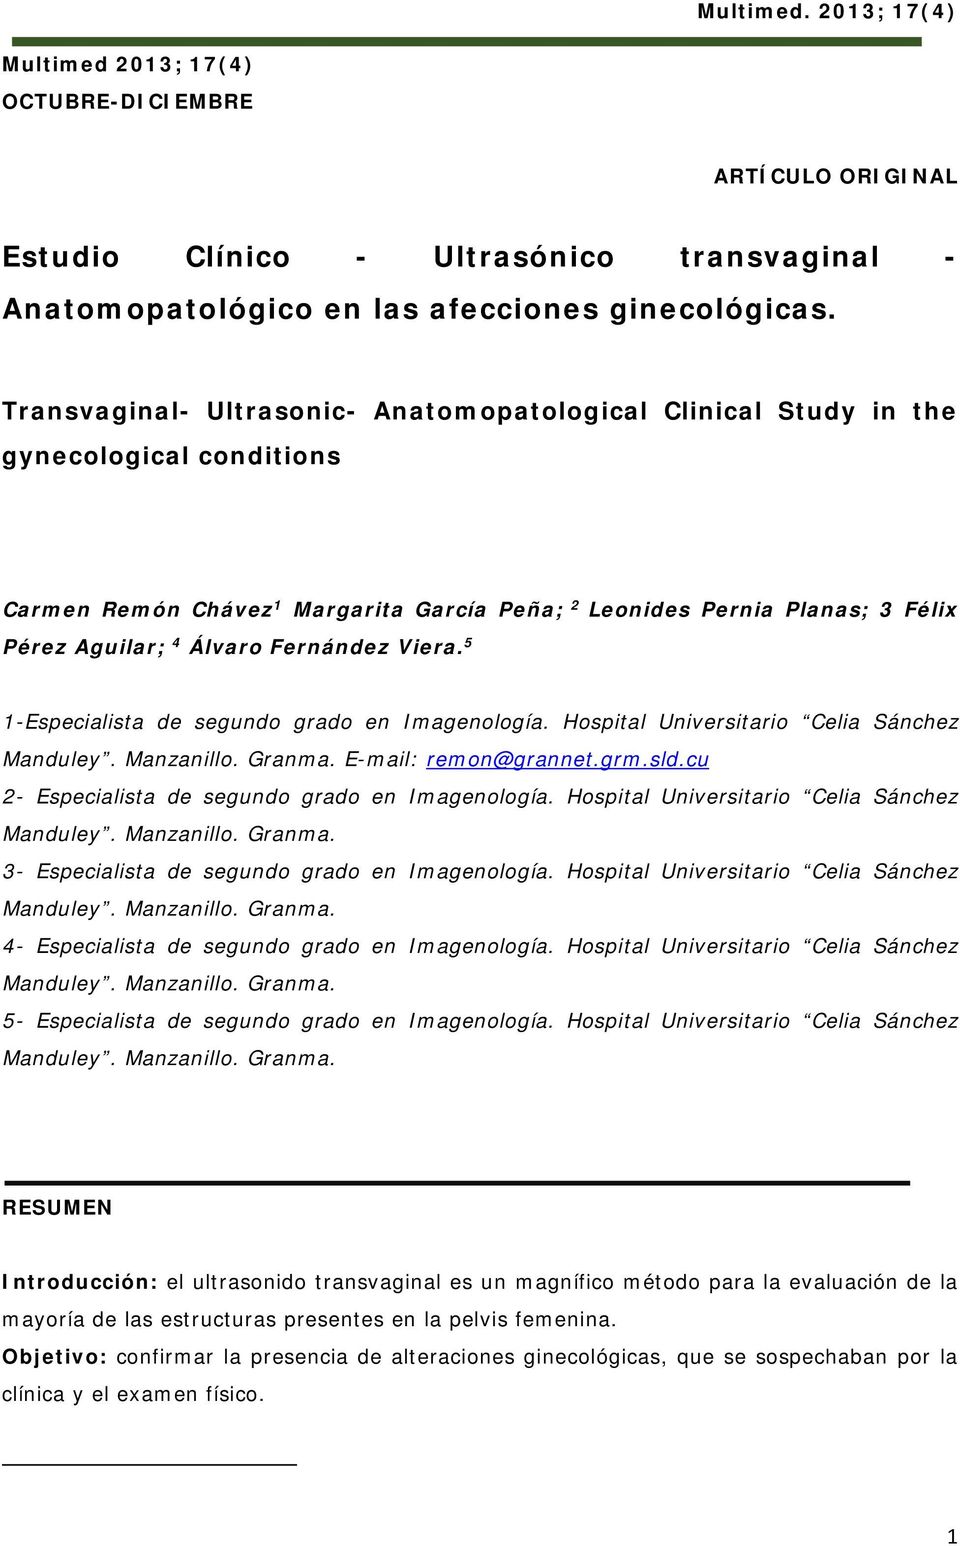 Fernández Viera. 5 1-Especialista de segundo grado en Imagenología. Hospital Universitario Celia Sánchez Manduley. Manzanillo. Granma. E-mail: remon@grannet.grm.sld.